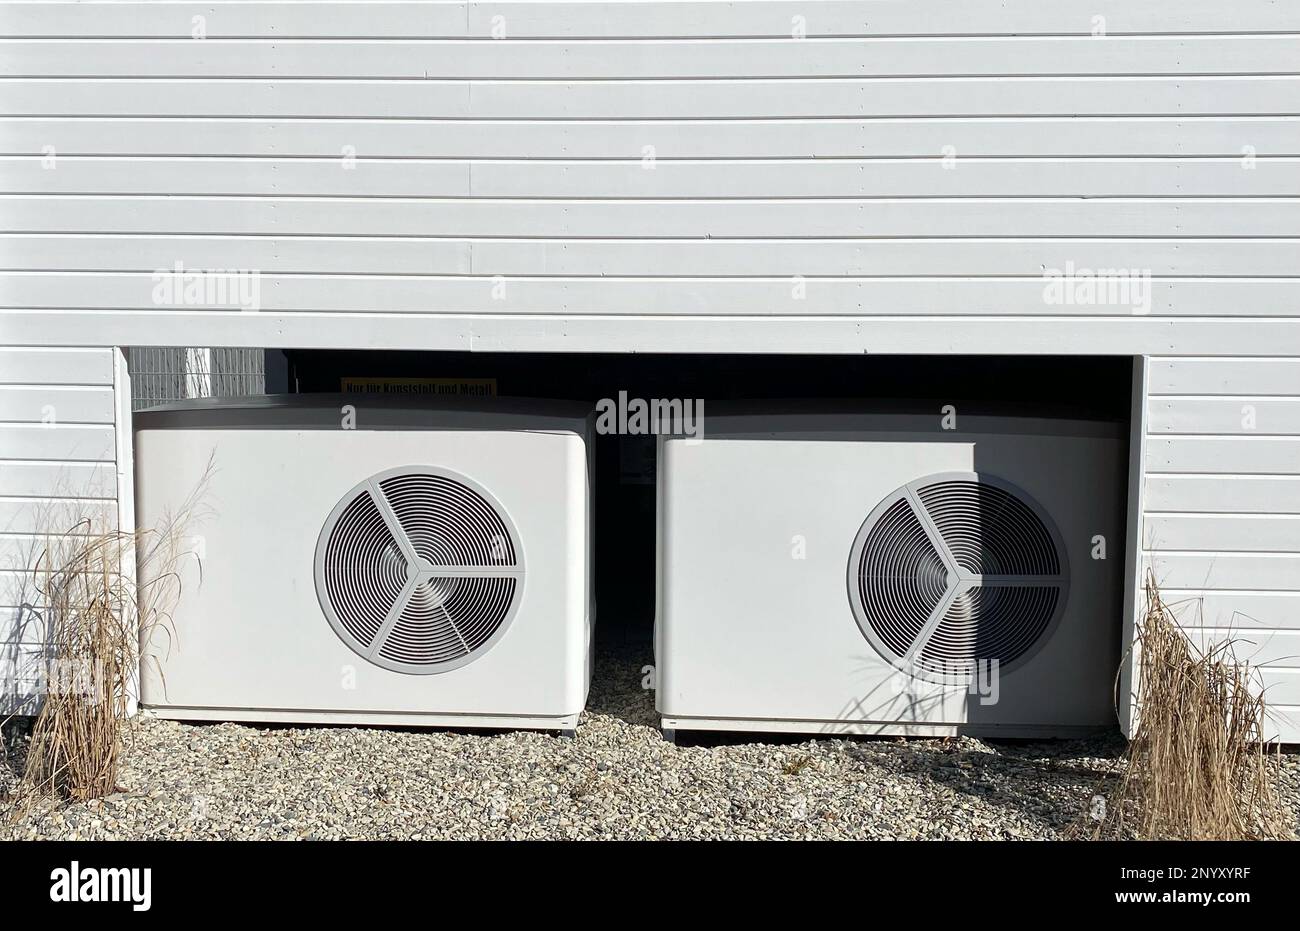 Neu installierte Wärmepumpen, die saubere Energie vor einem Haus liefern. Das Thema Energiewende und steigende Strompreise. Stockfoto